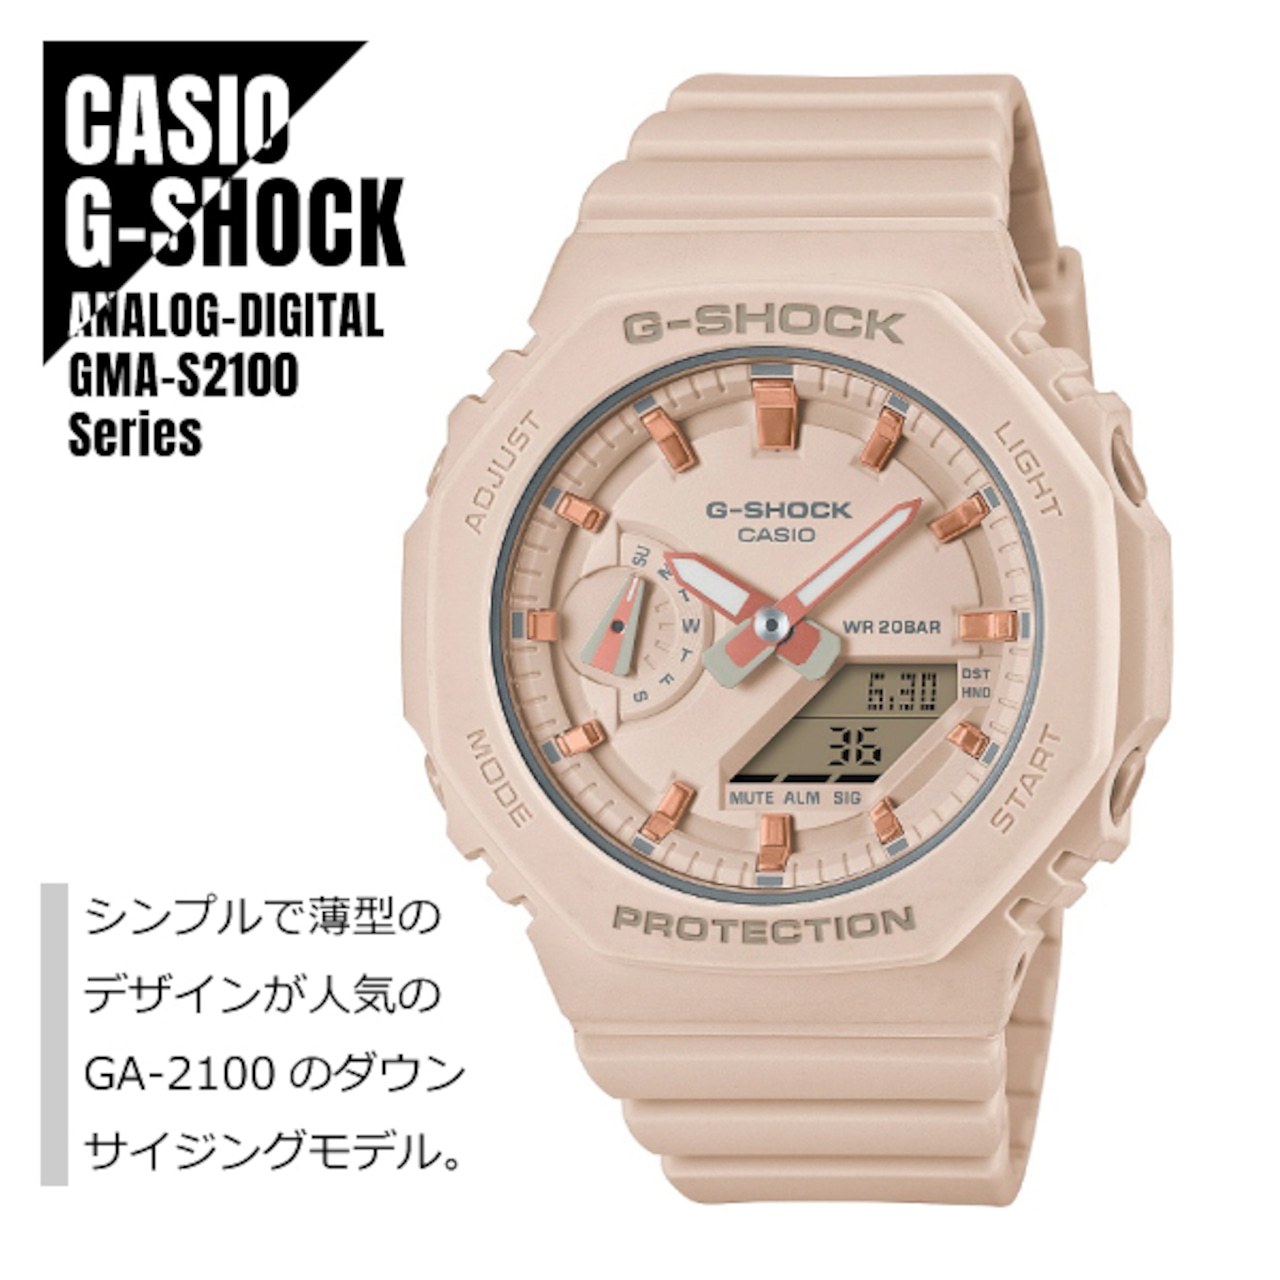 CASIO カシオ G-SHOCK Gショック カーボンコアガード構造 八角形フォルム GMA-S2100-4A ピンクベージュ 腕時計 レディース